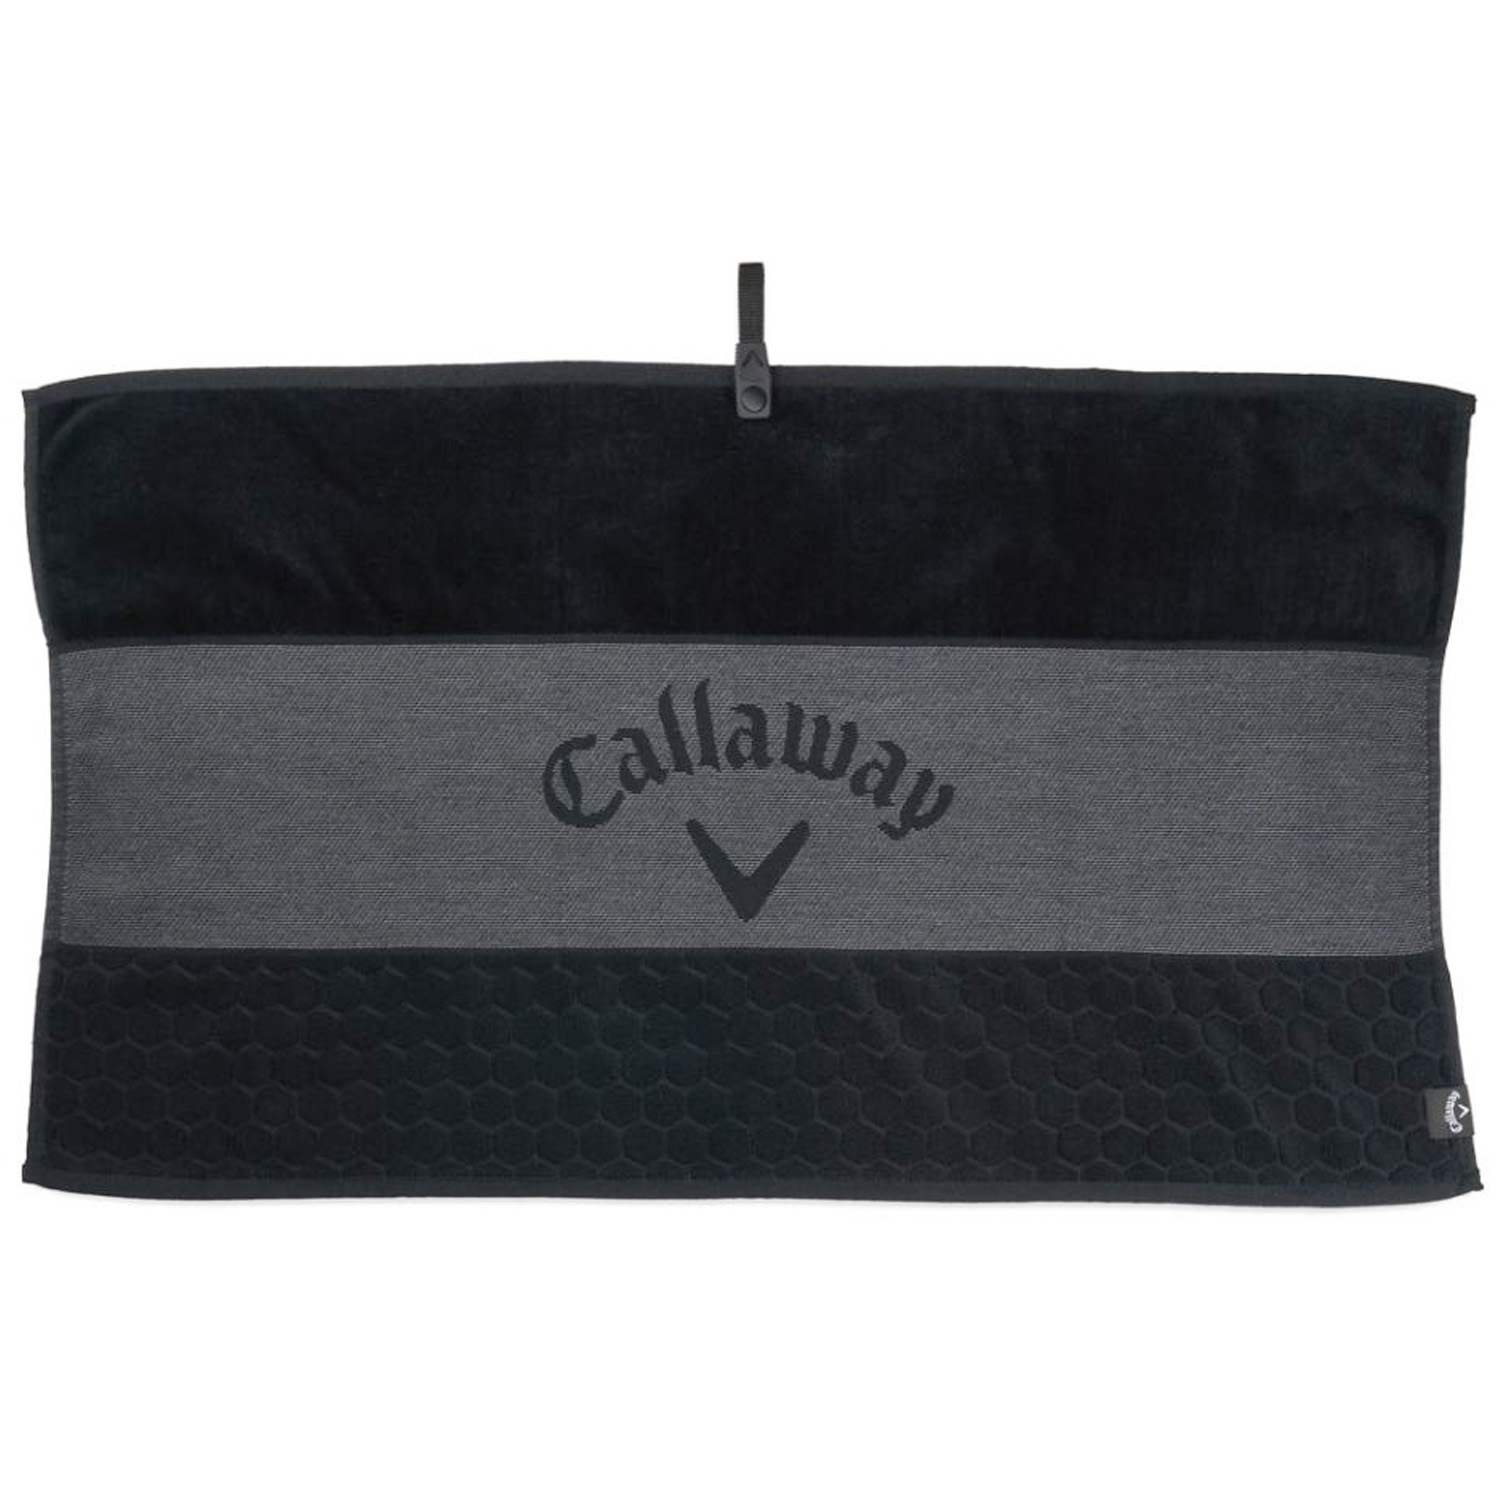 Callaway Tour Golf Towel